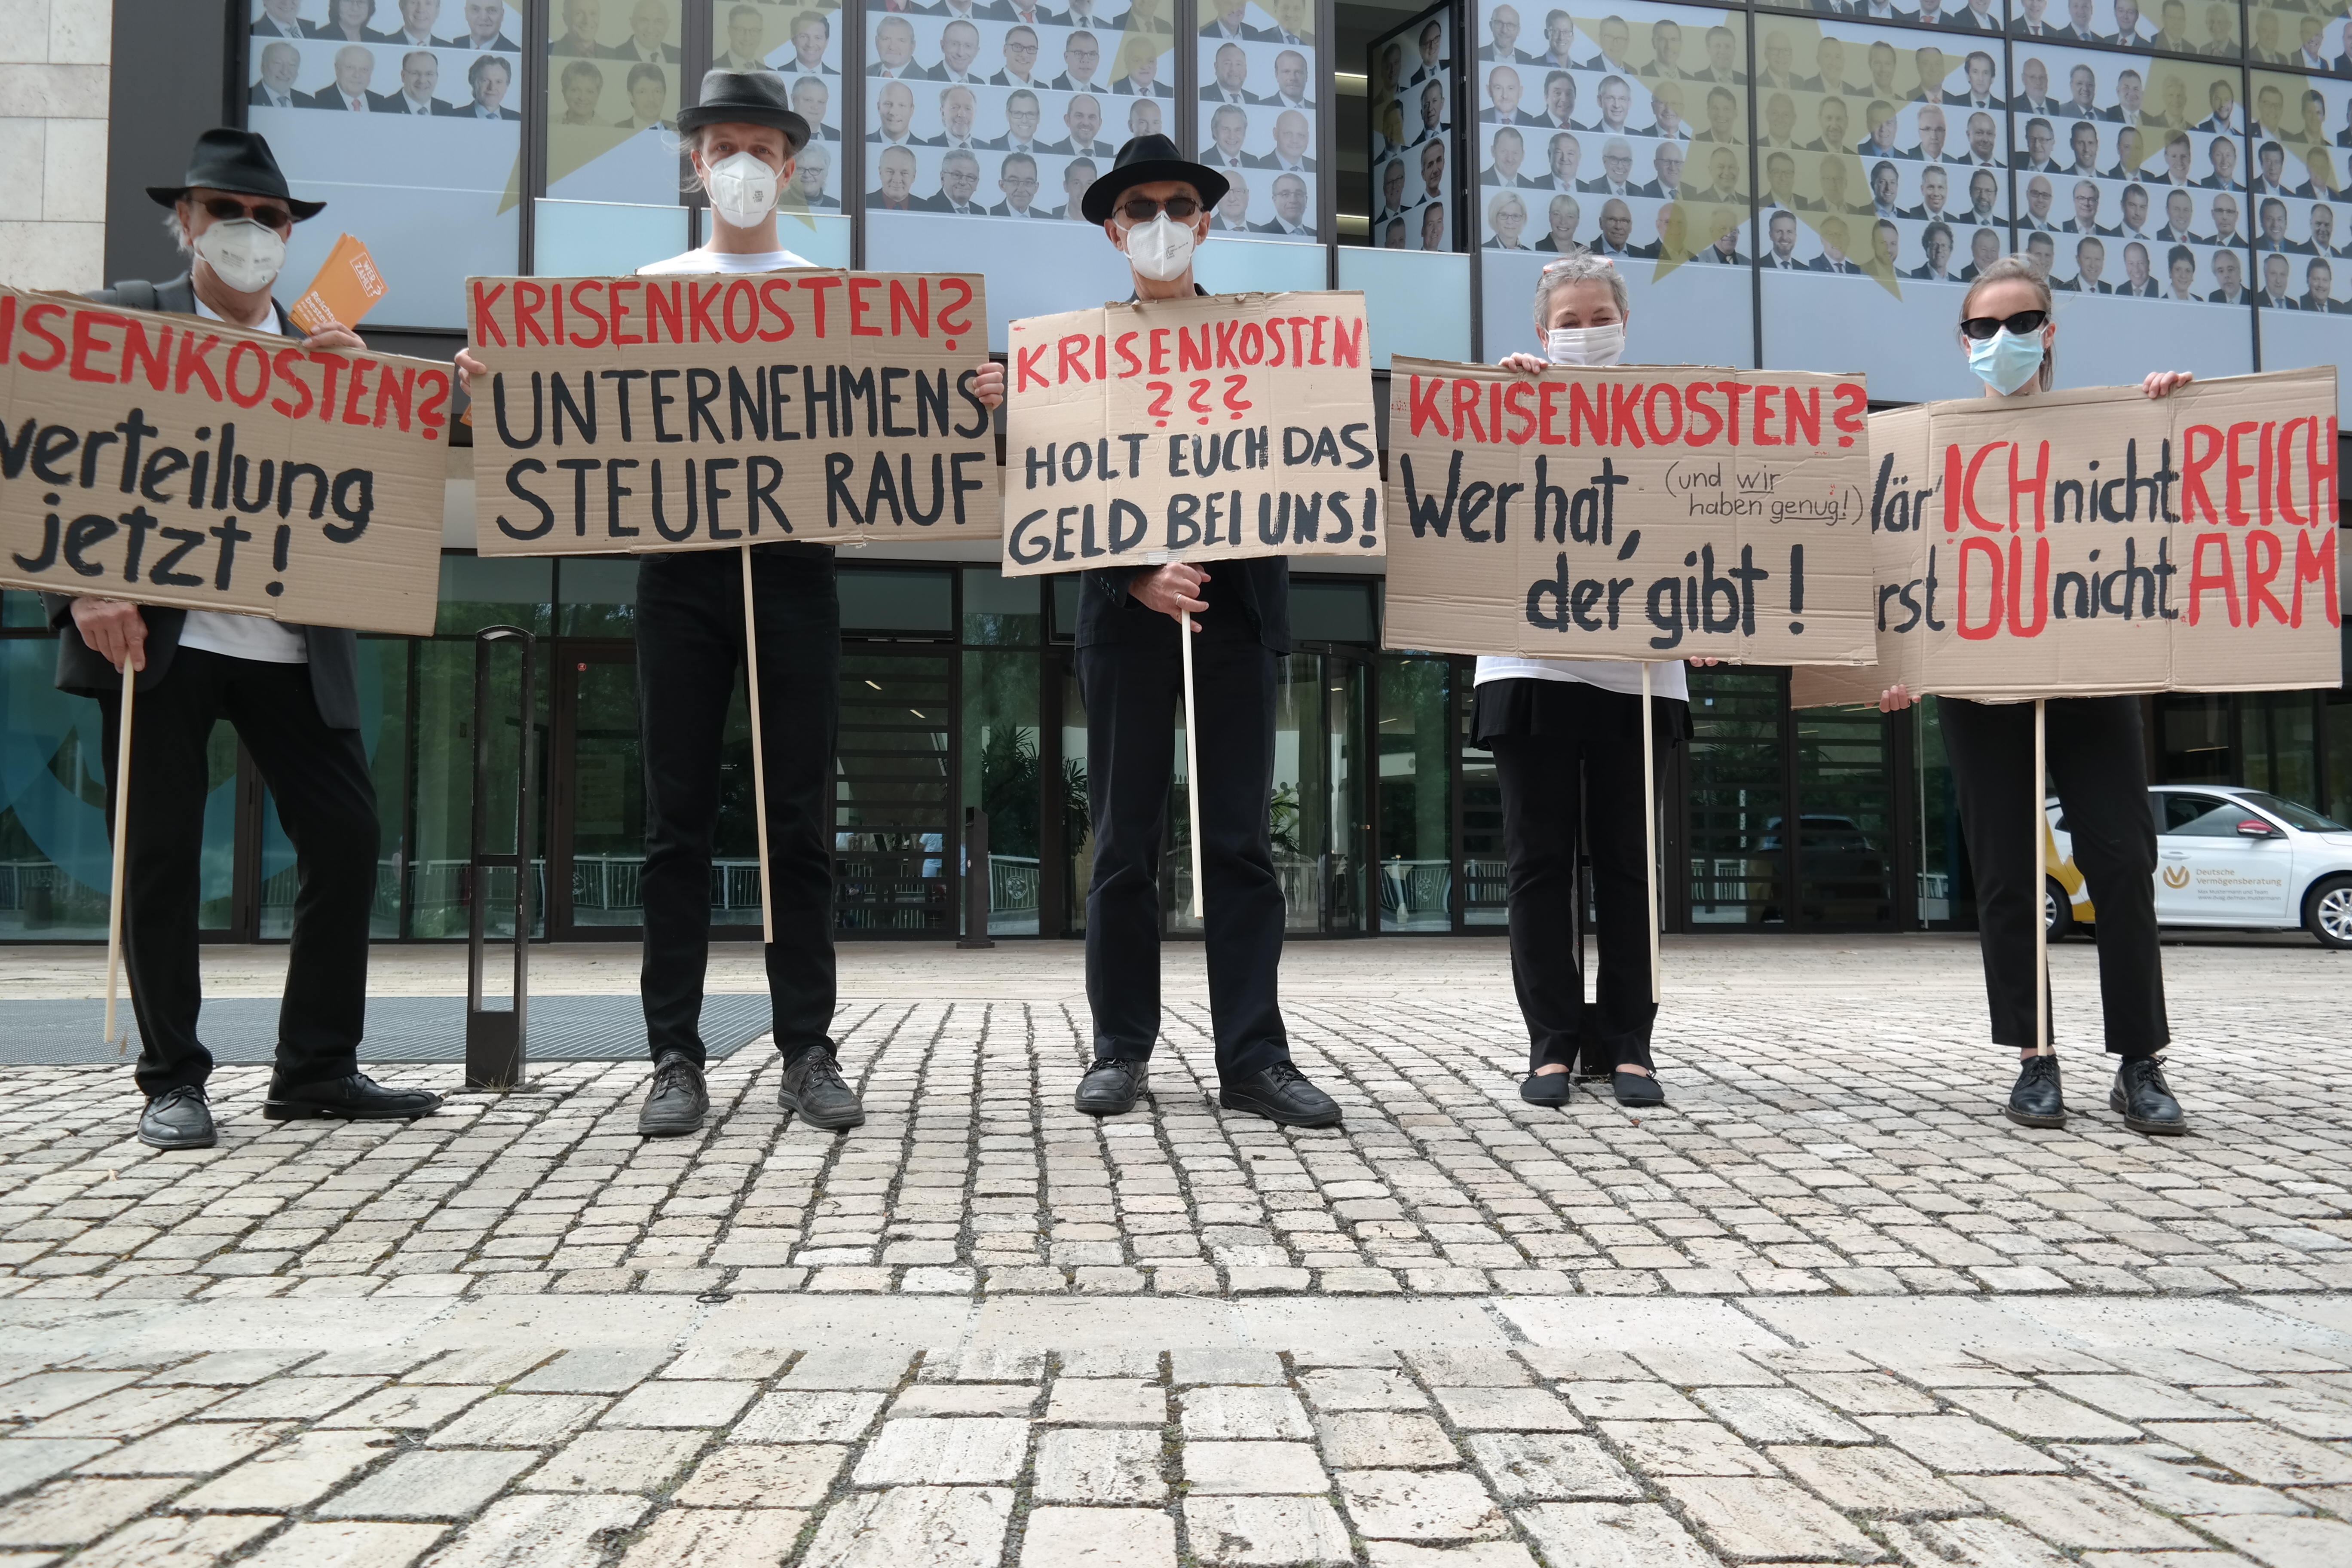 Eine Gruppe von Menschen in Anzügen steht vor der Zentrale der Deutschen Vermögensberatung mit Schildern auf denen Texte wie "Krisenkosten? Unternehmenssteuer Rauf" oder "Krisenkosten? Wer hat der gibt!" steht